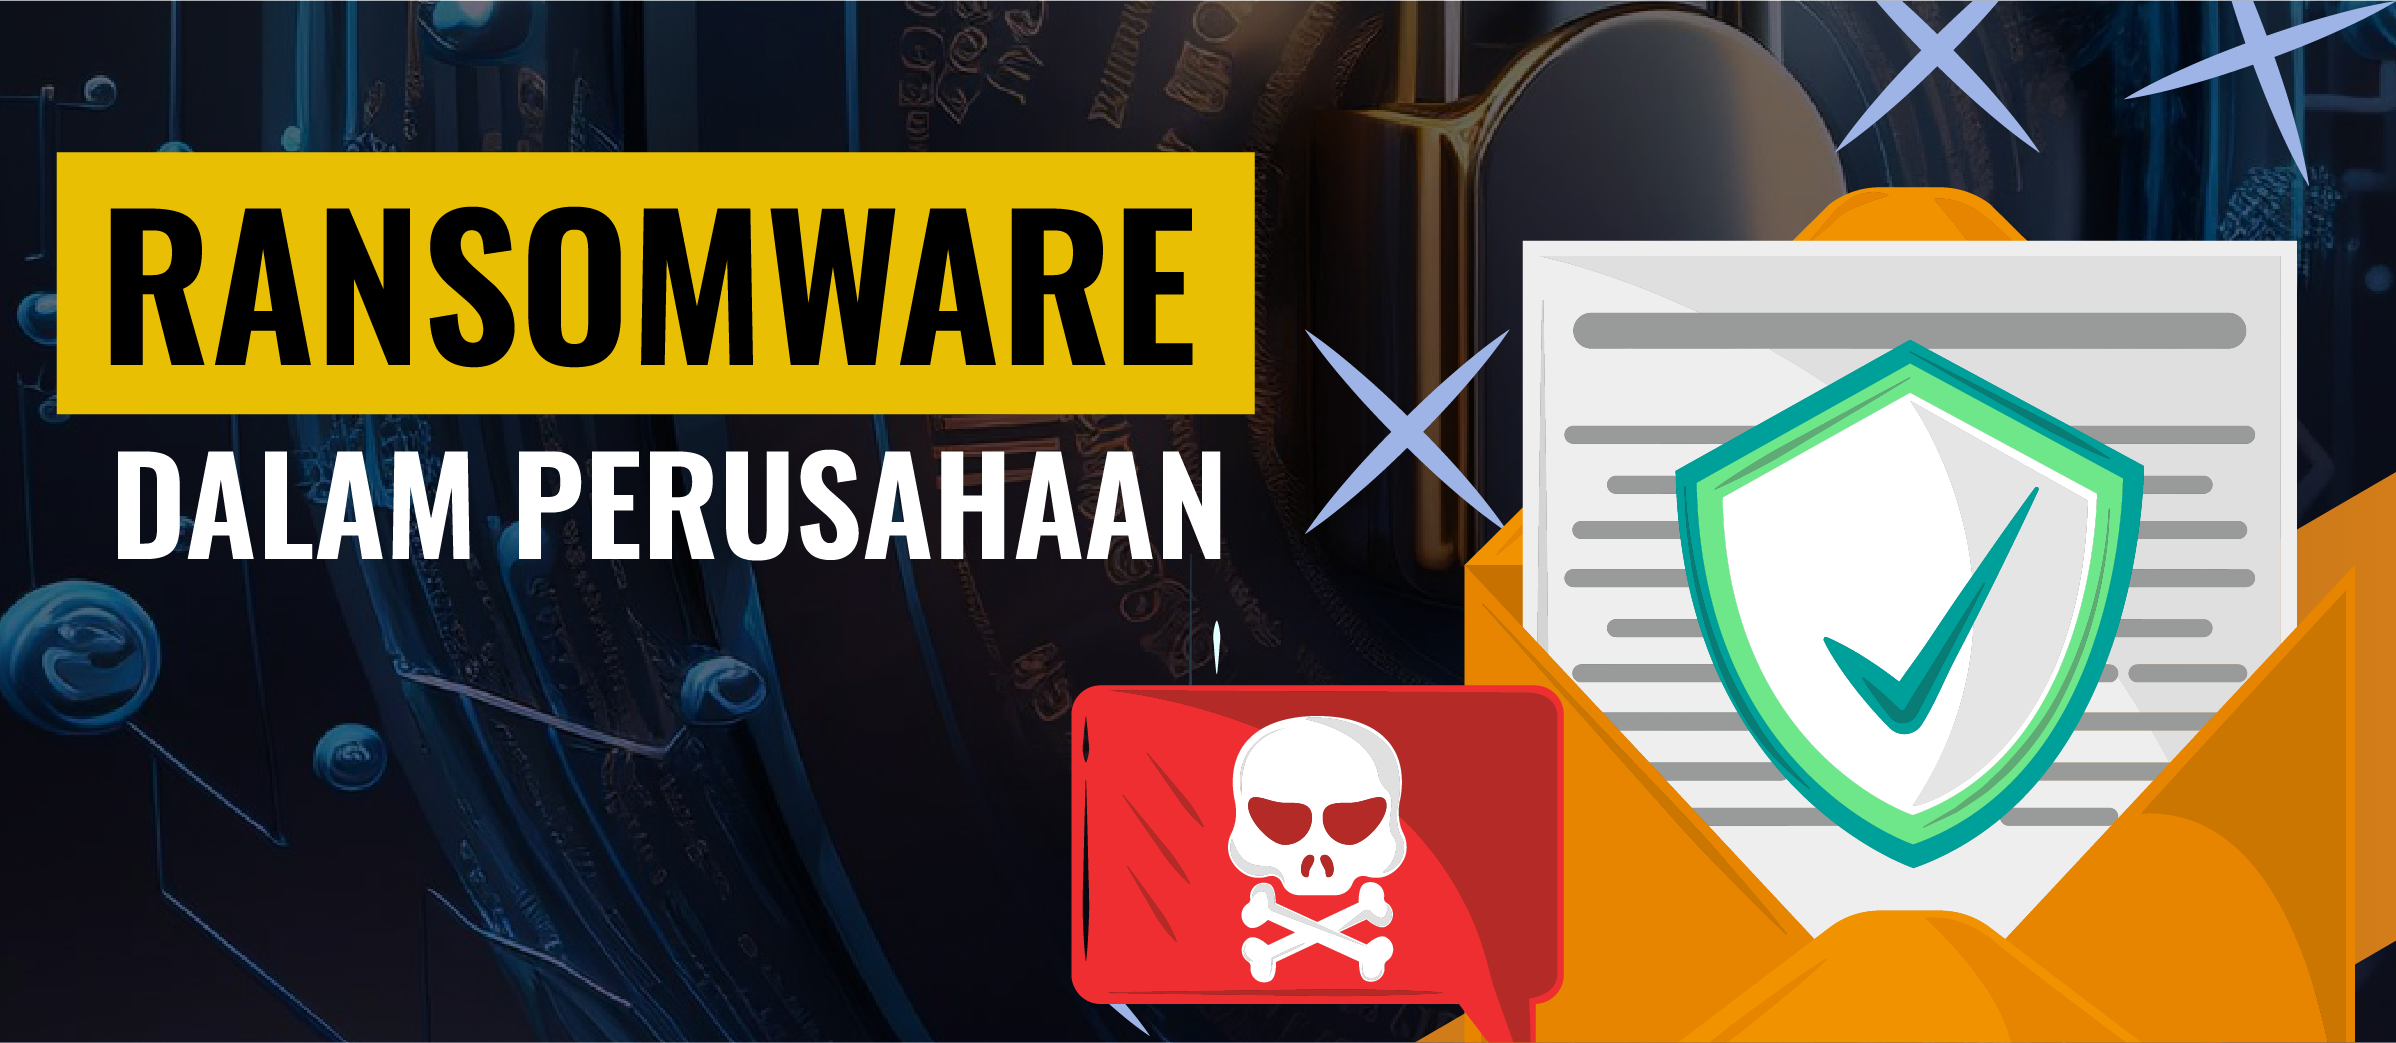 Ransomware dalam Perusahaan